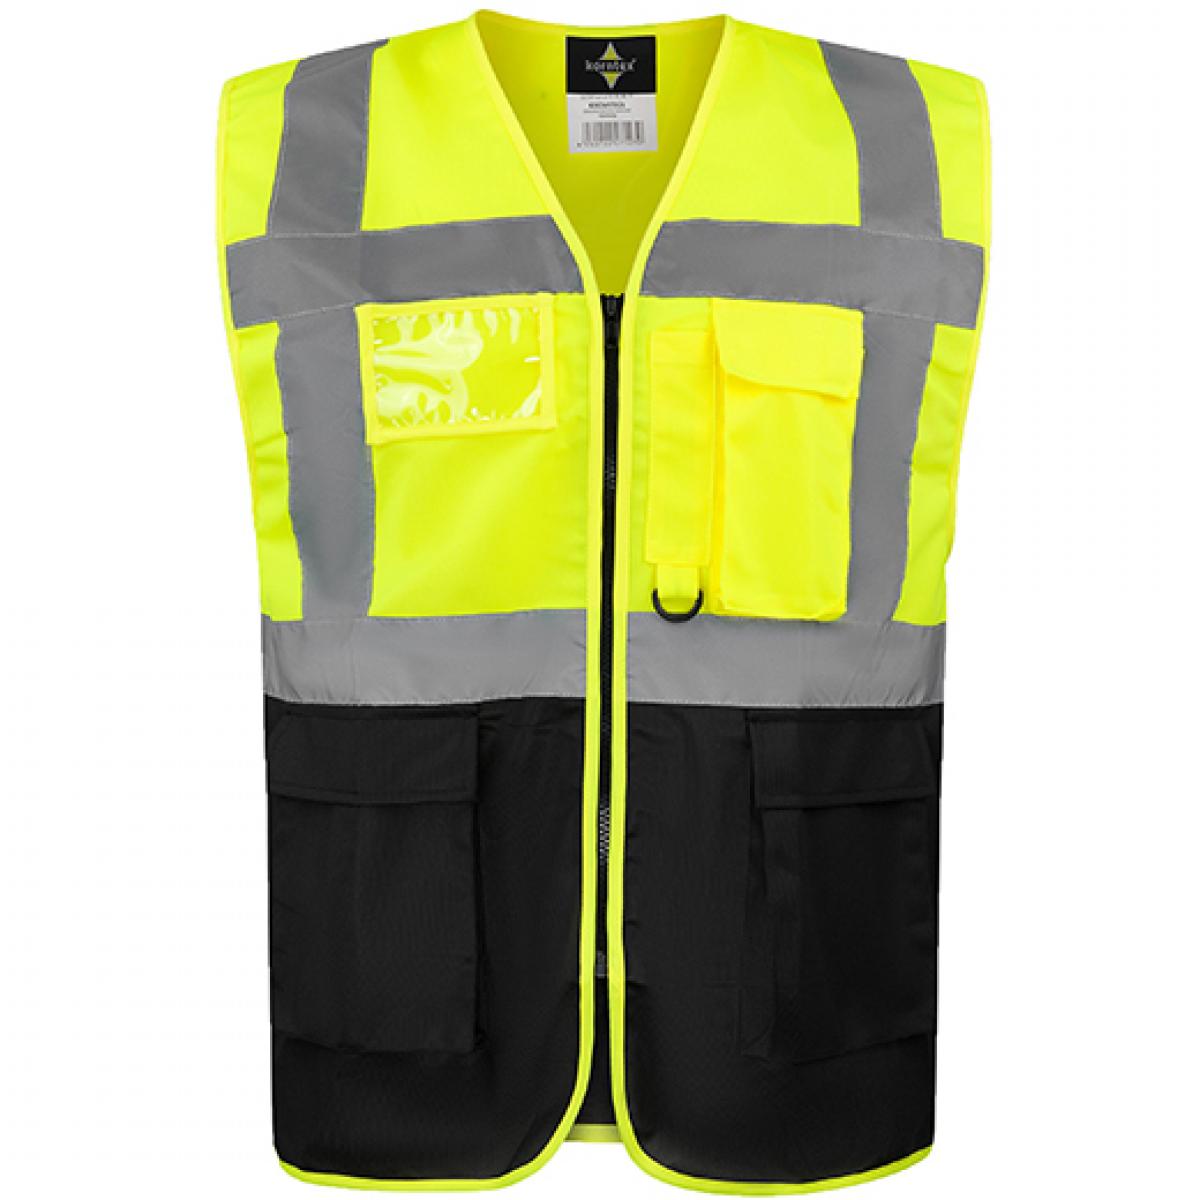 Hersteller: Korntex Herstellernummer: KXCMF Artikelbezeichnung: Comfort Executive Multifunctional Safety Vest Hamburg Farbe: Signal Yellow/Black